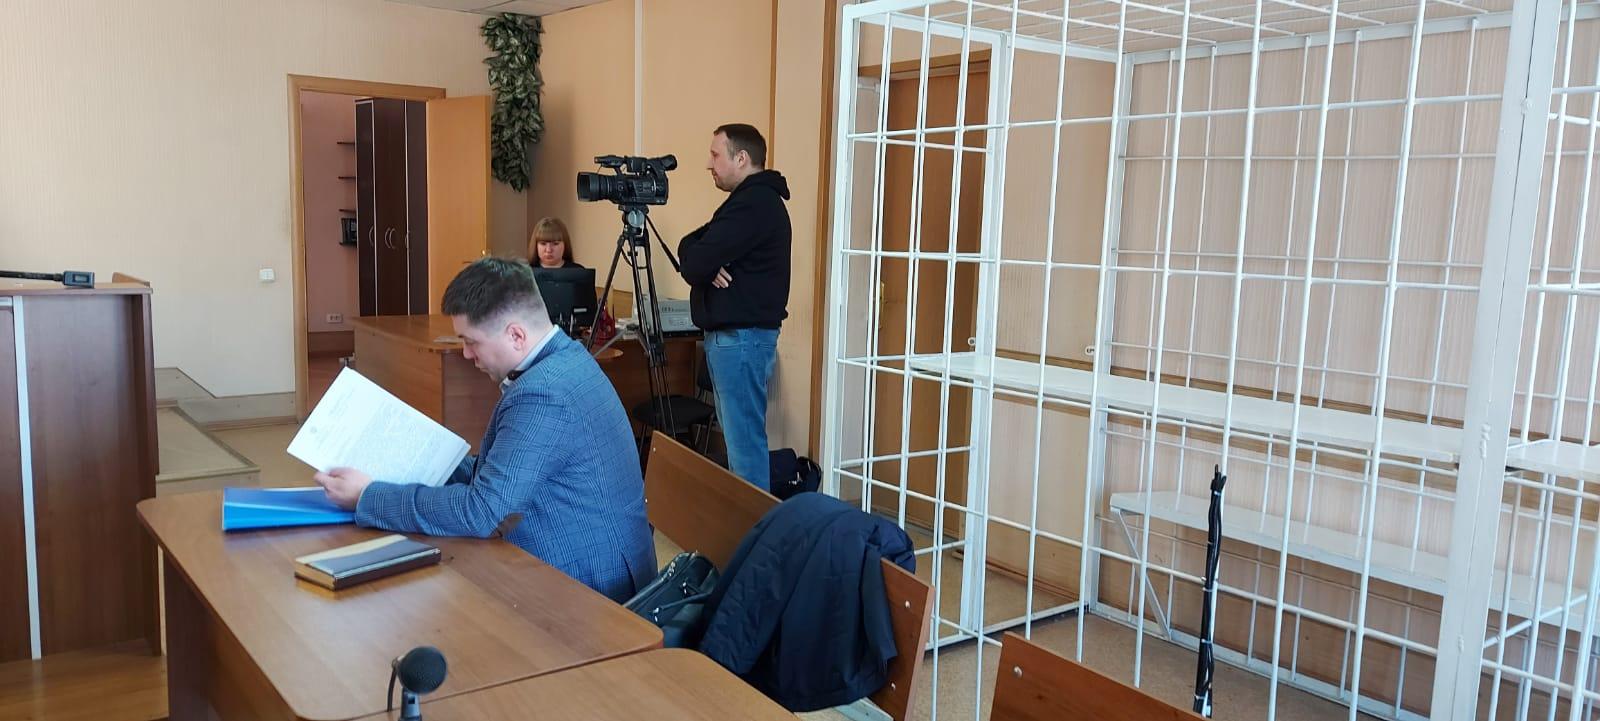 Фото «Жена занимает 125 квадратов»: в Новосибирске экс-прокурора Фалилеева потребовали выселить из служебного жилья 2